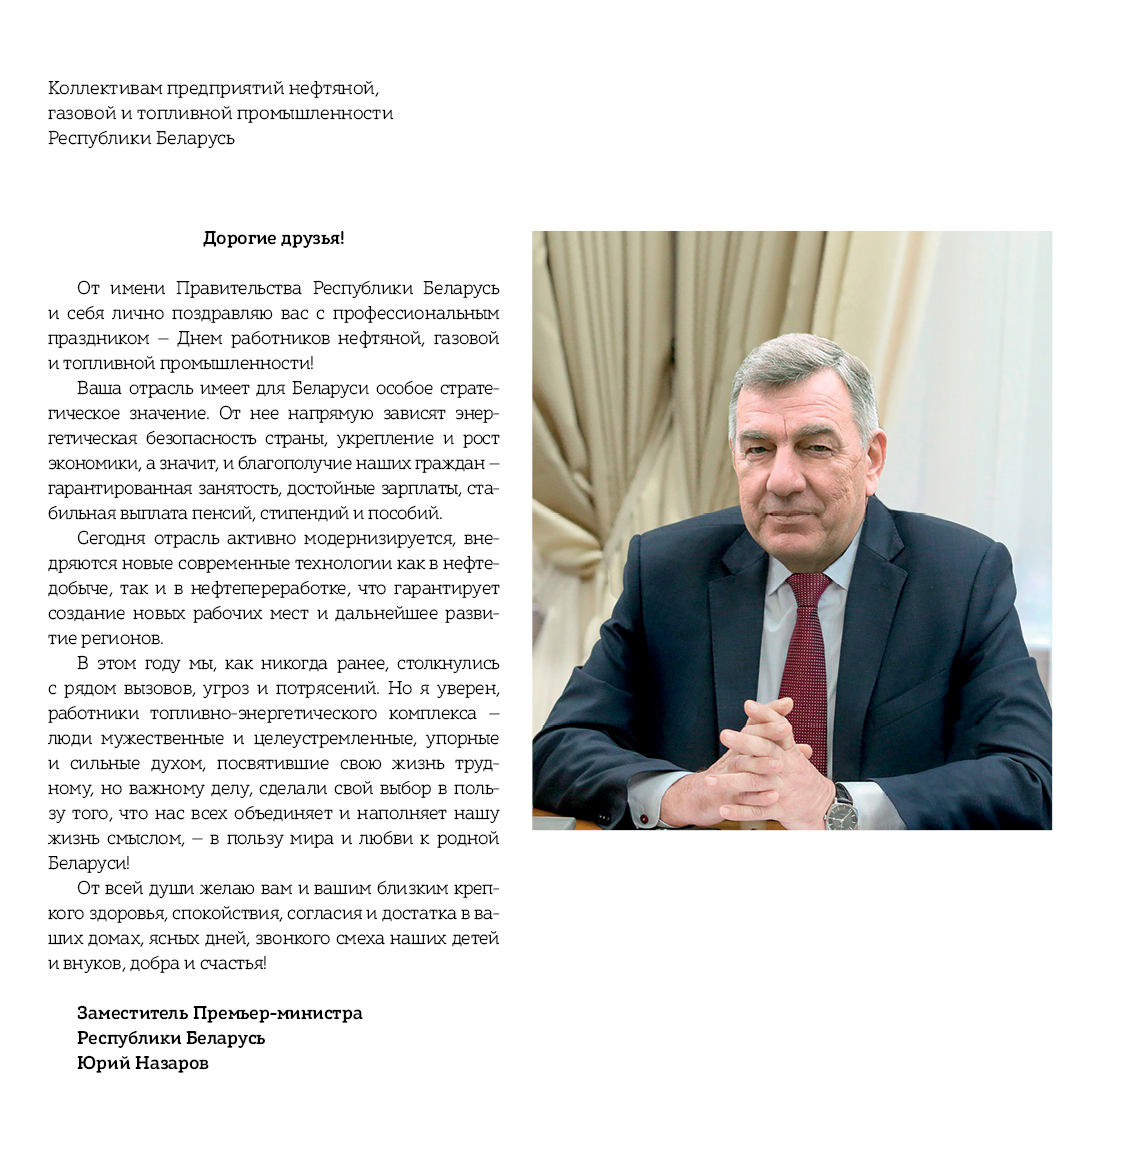 Поздравление заместителя Премьер-Министра Республики Беларусь нефтяника с Днем